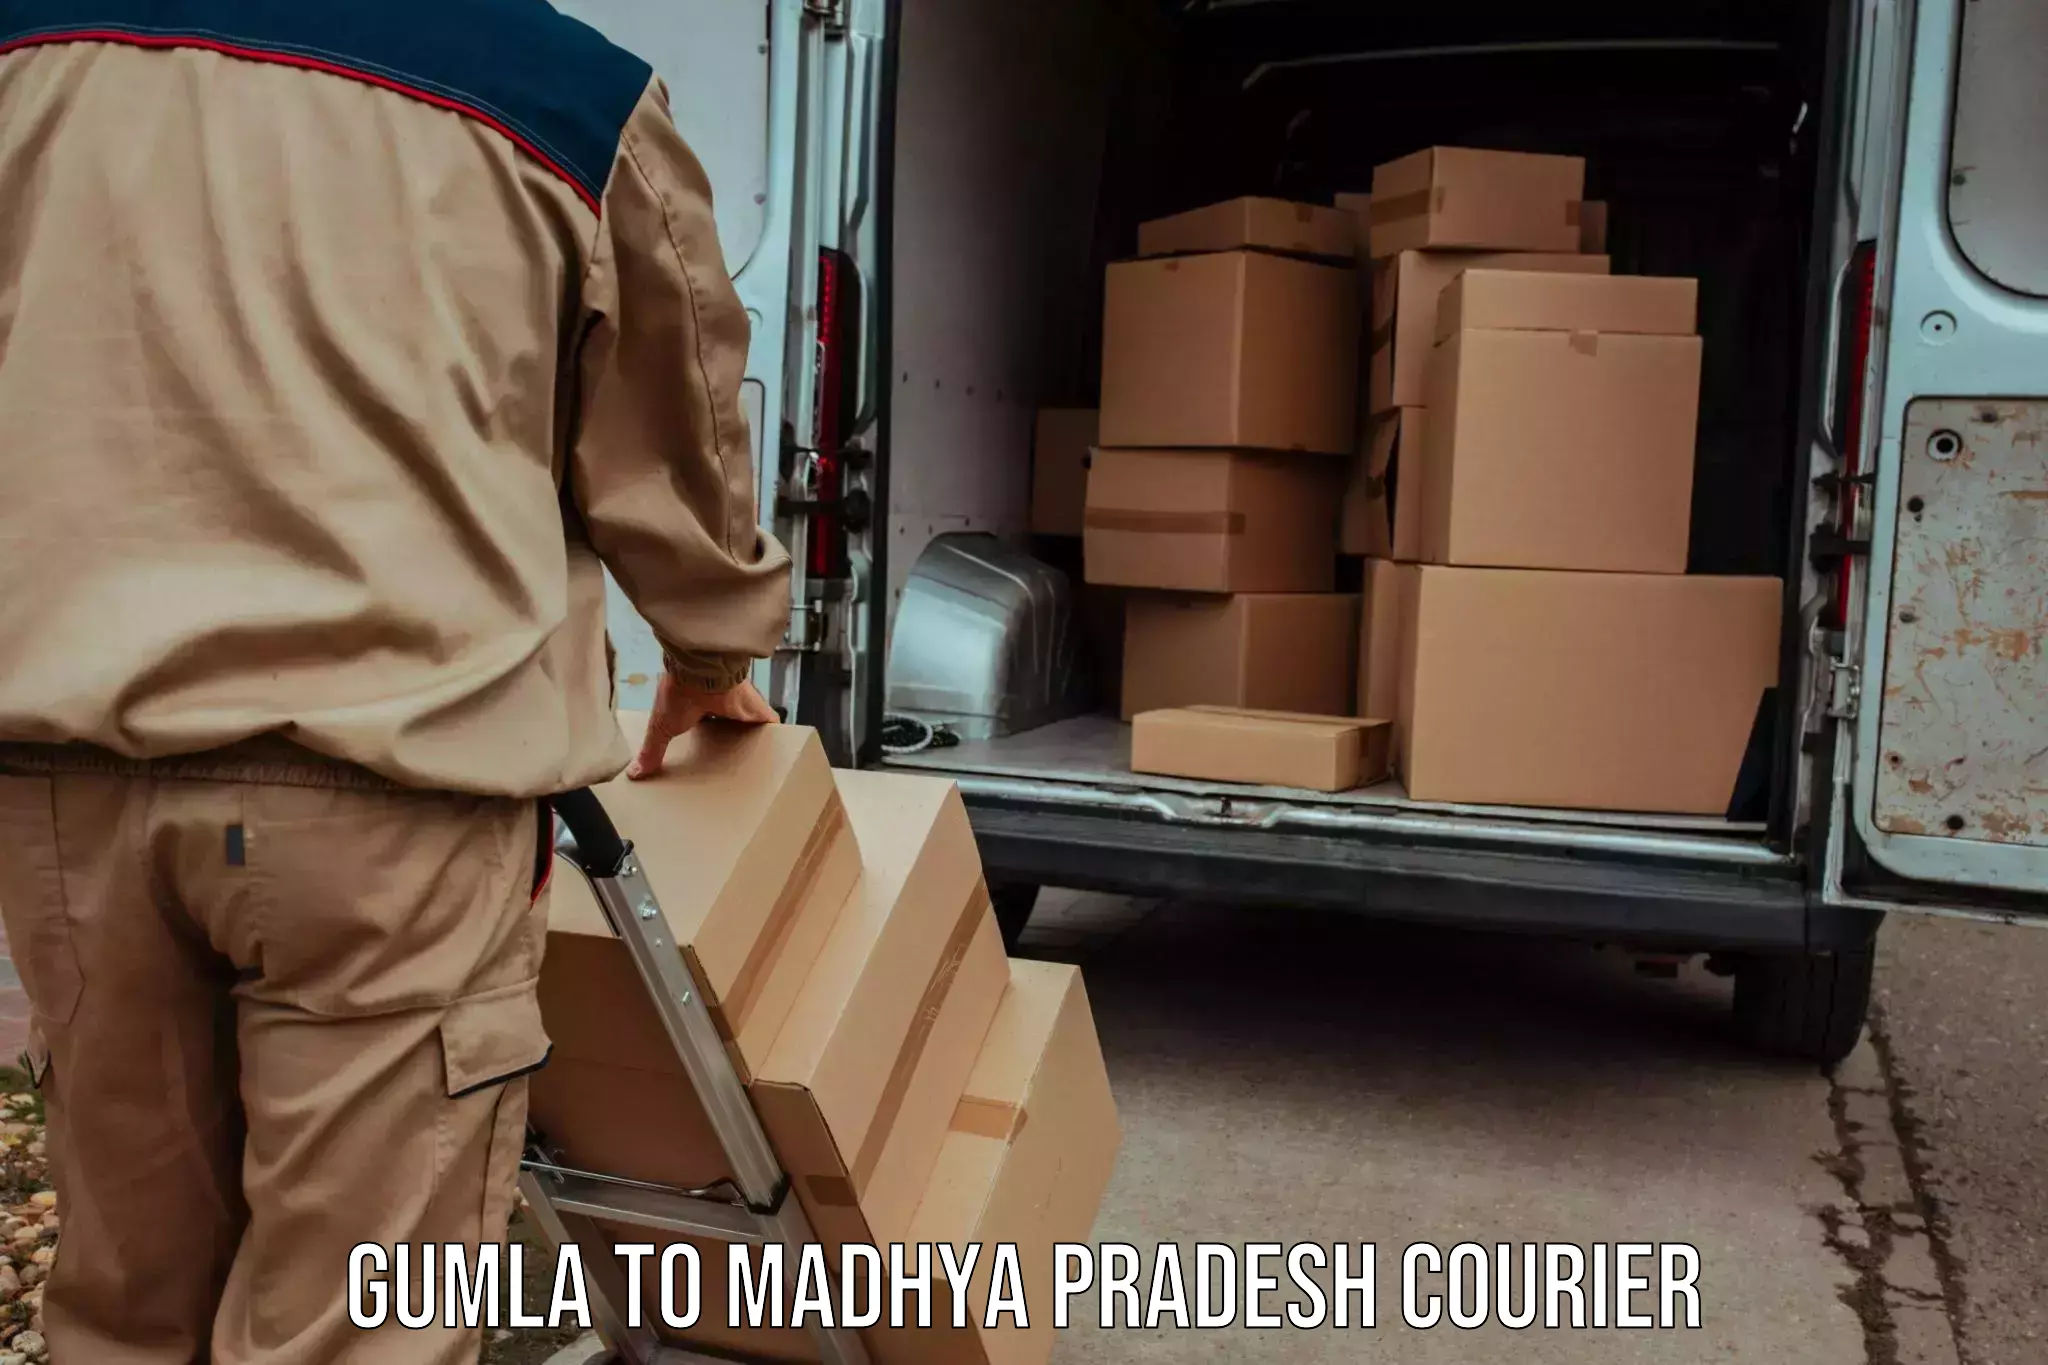 24/7 courier service Gumla to Dola